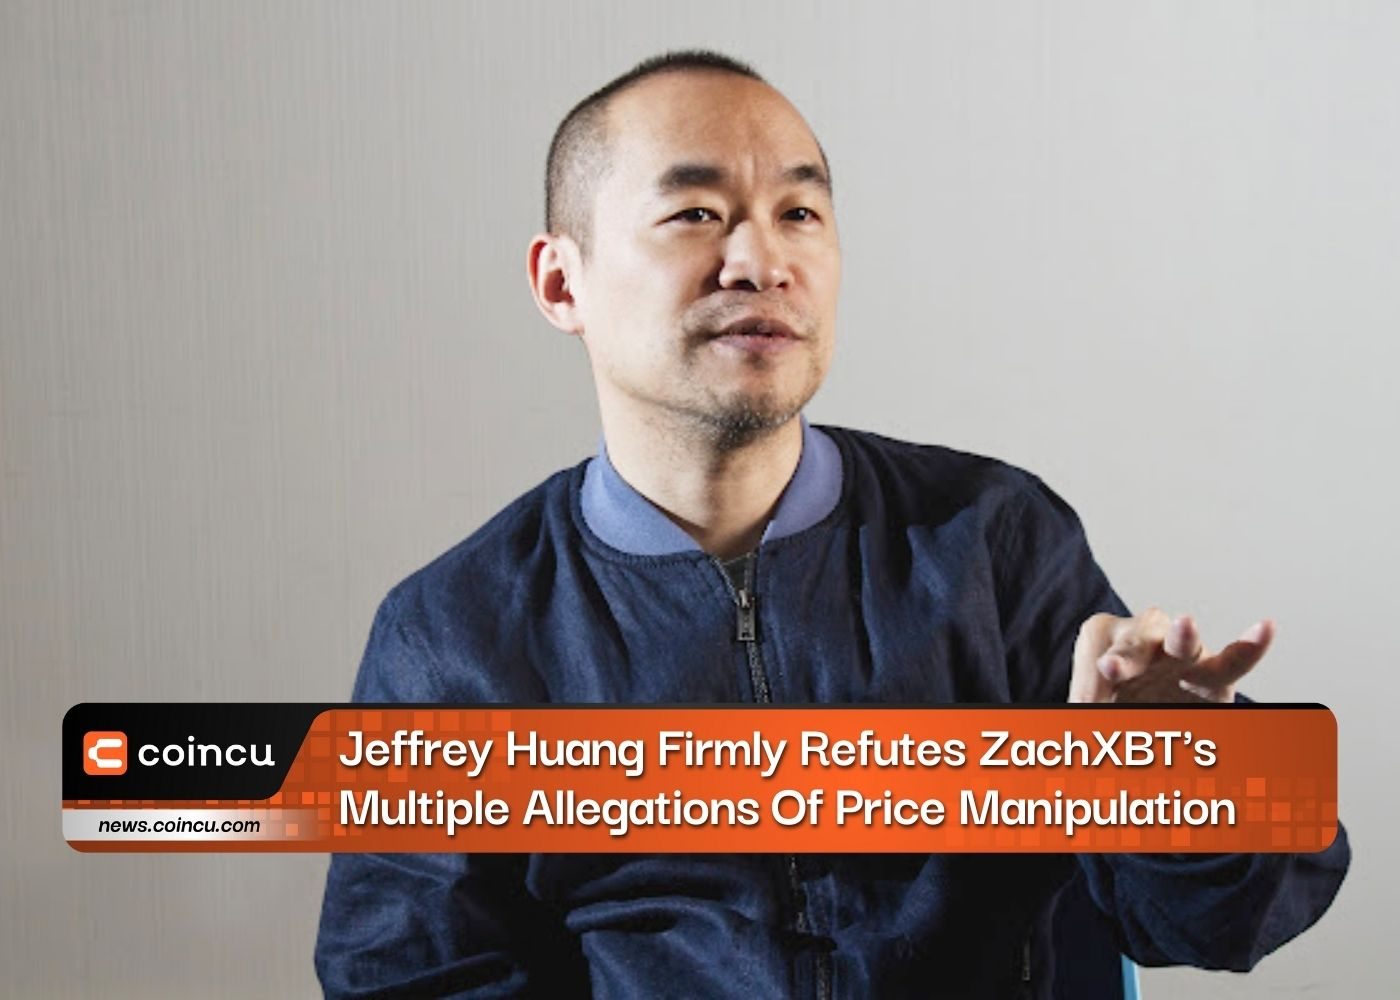 Jeffrey Huang kiên quyết bác bỏ nhiều cáo buộc thao túng giá của ZachXBT